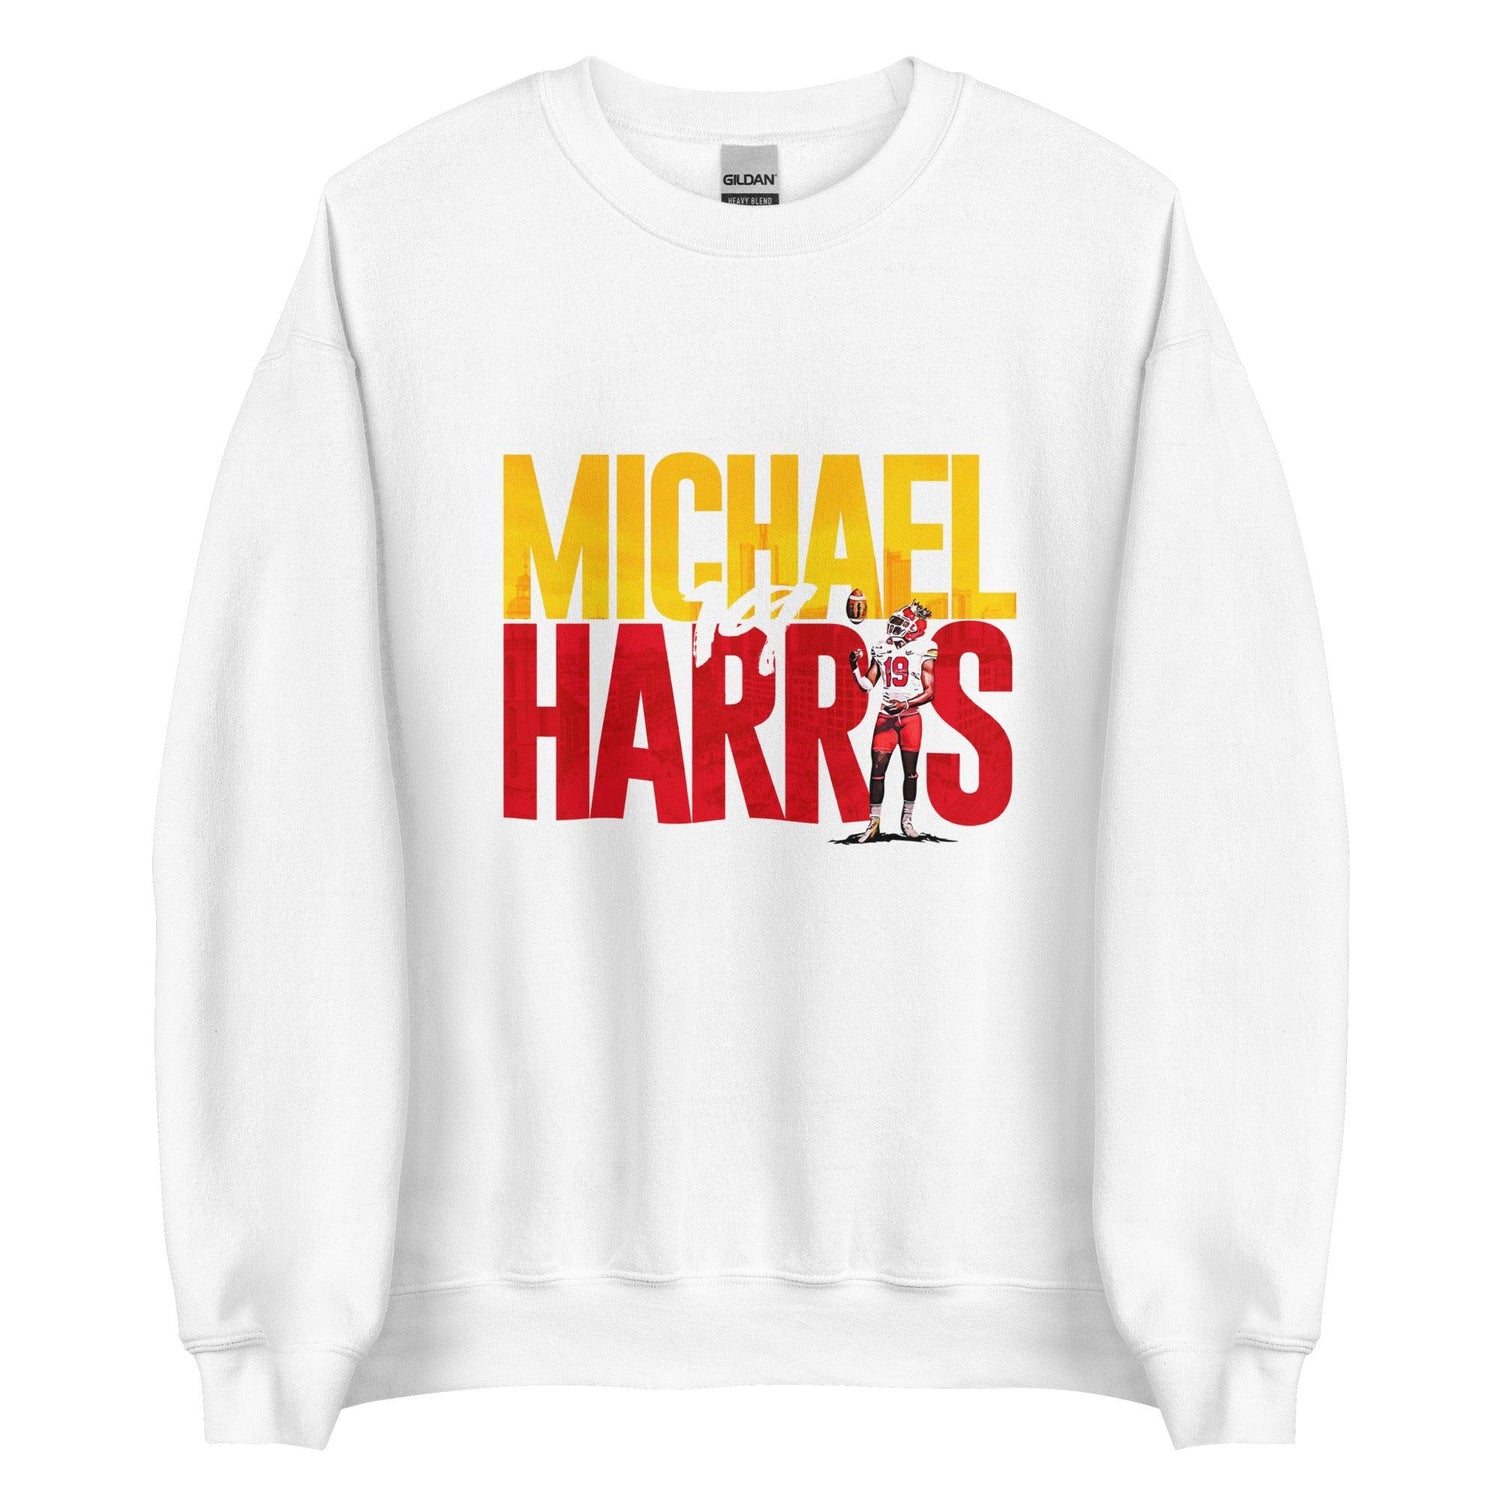 Michael Harris "Gameday" Sweatshirt - Fan Arch